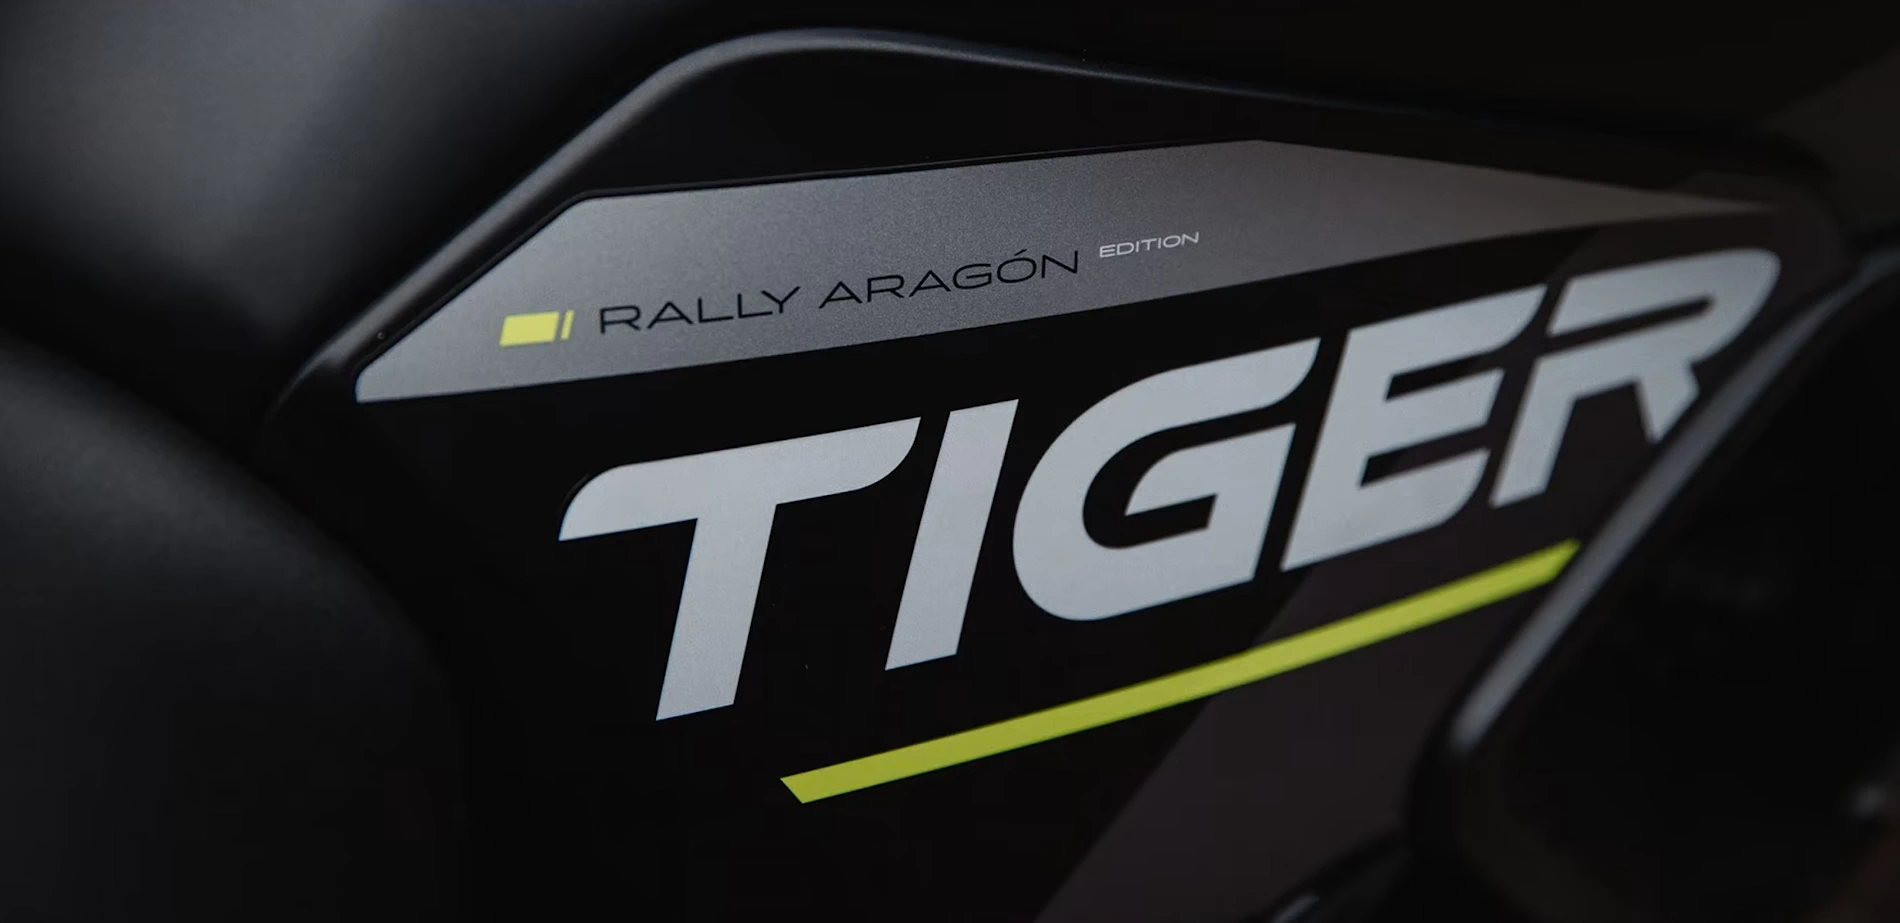 Tiger 900 Rally Aragón Edition